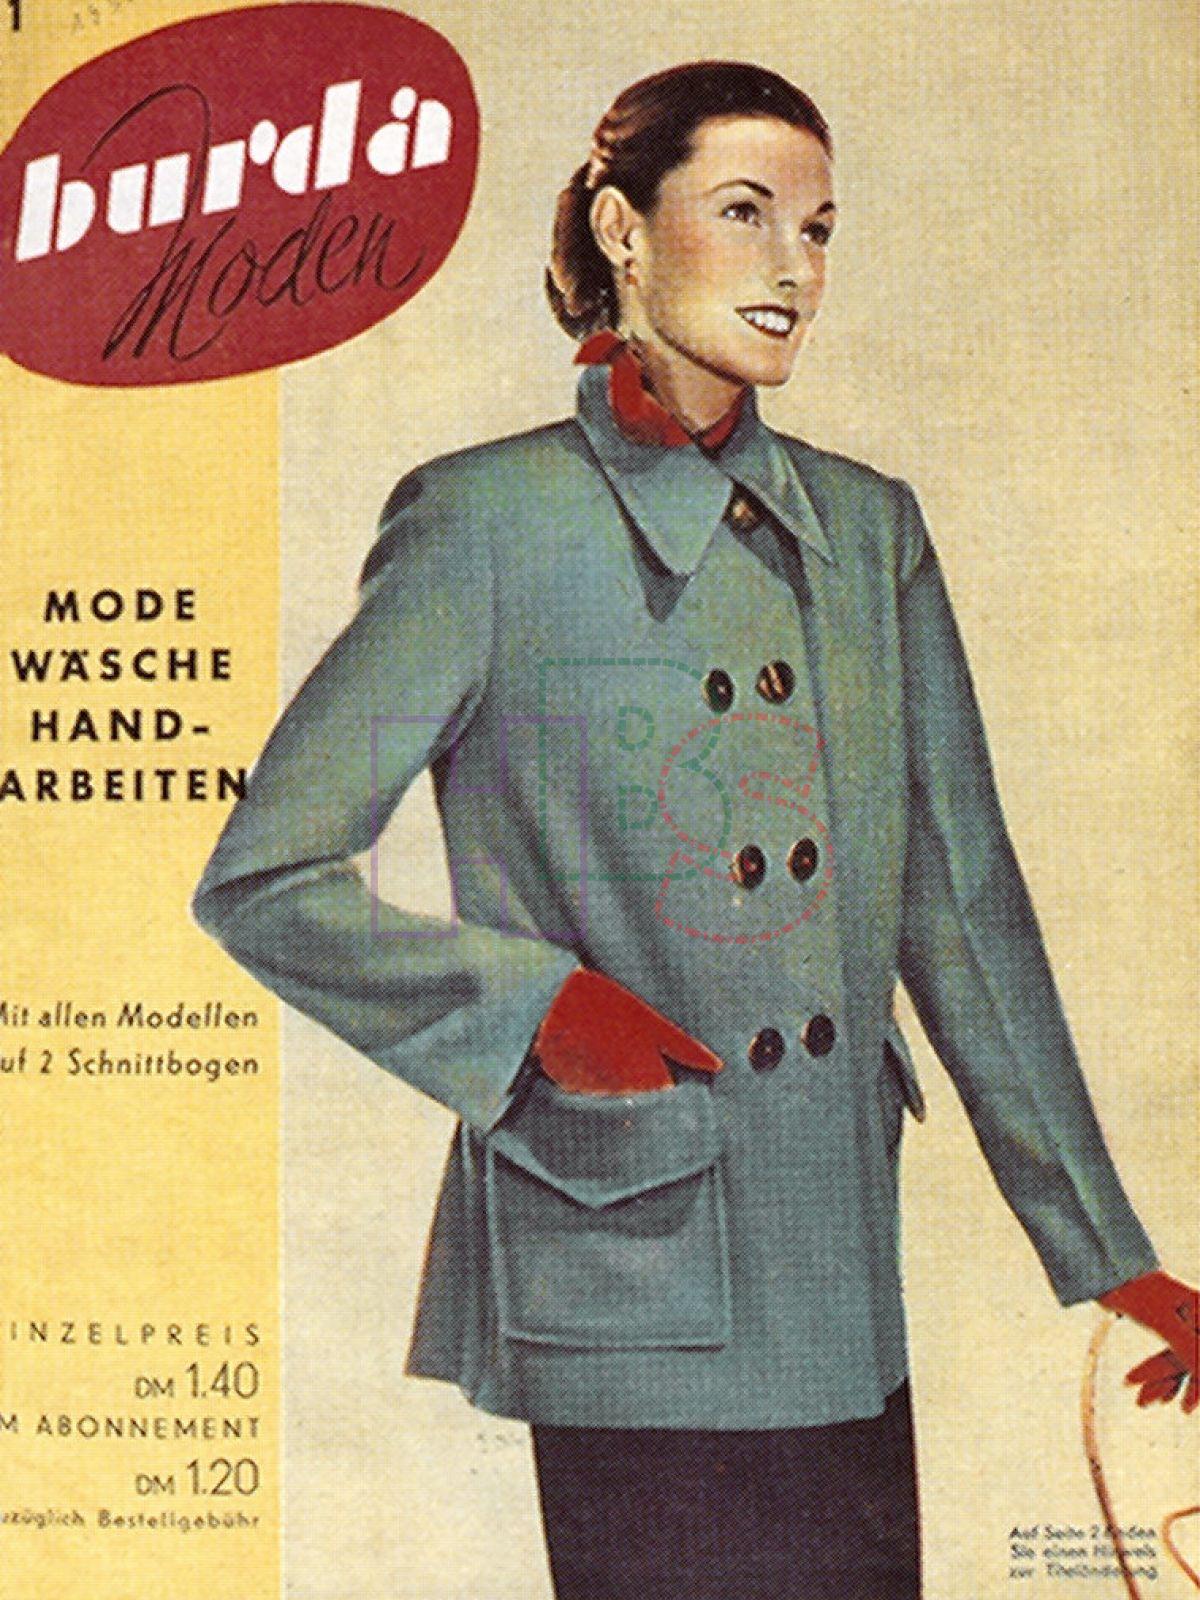 First magazine. Первый выпуск журнала Бурда в Германии. Бурда 1949 мода. Журнал Бурда первый выпуск. Энне Бурда обложки журнала.